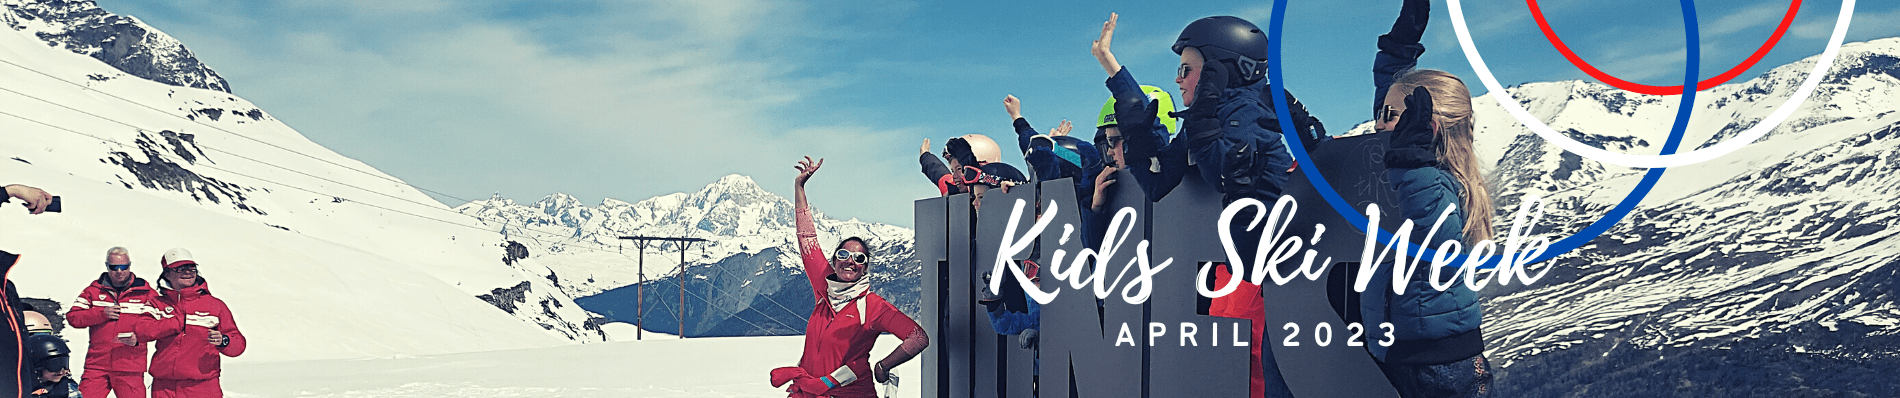 wintersport met kinderen voordelig taos tignes skivakantie kids ski week